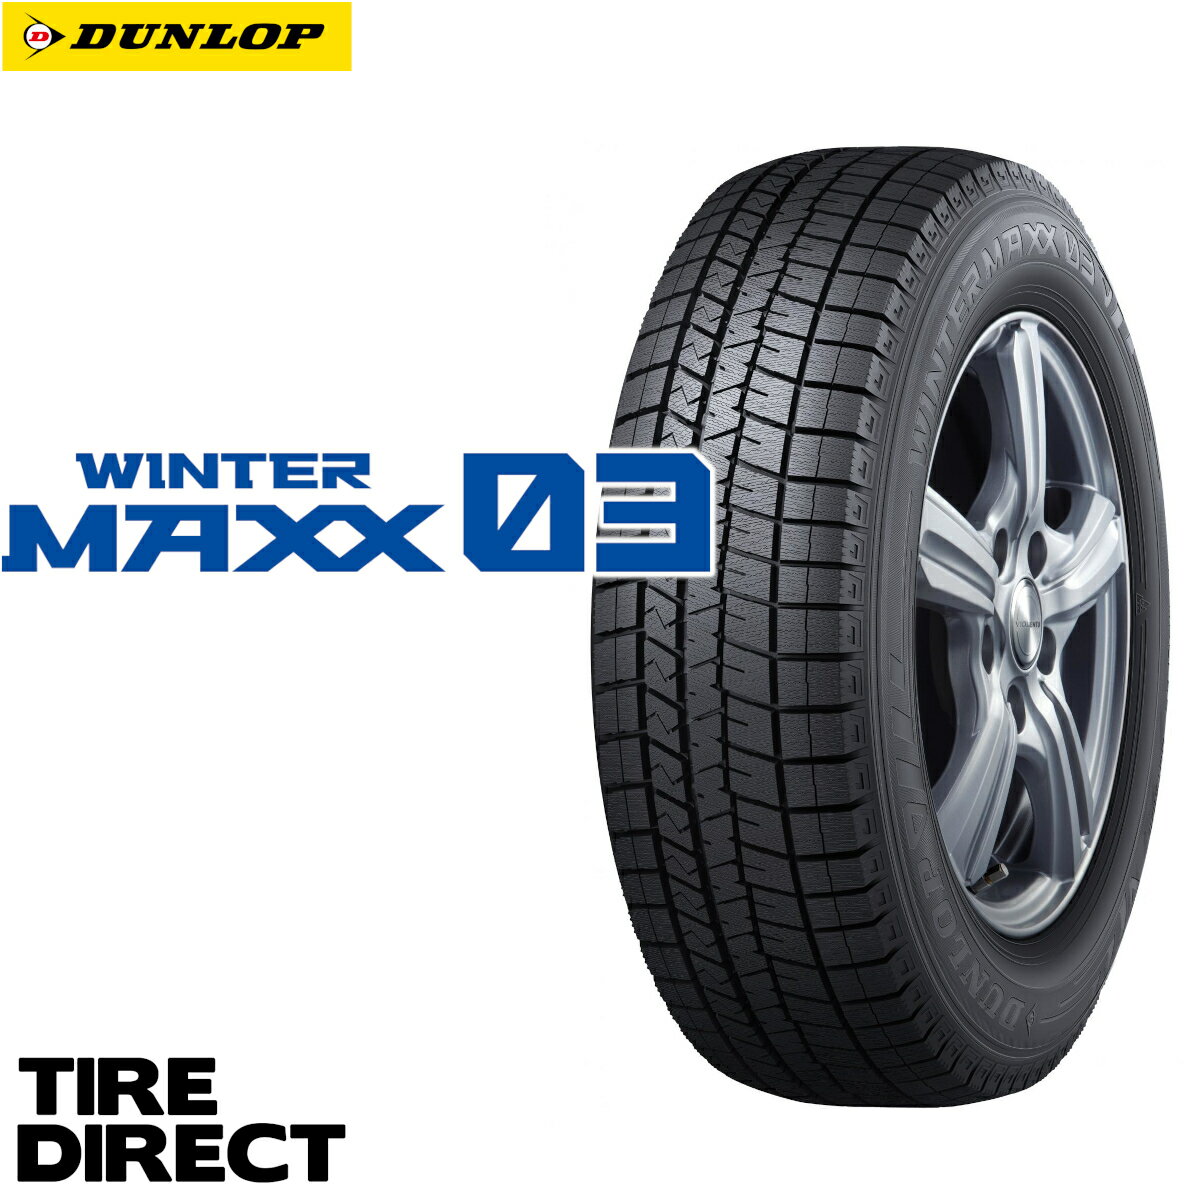 新品 ダンロップ ウインターマックス WM03 185/55R16 83Q DUNLOP WINTER MAXX ウィンターマックス 185/55-16 冬タイヤ スタッドレスタイヤ